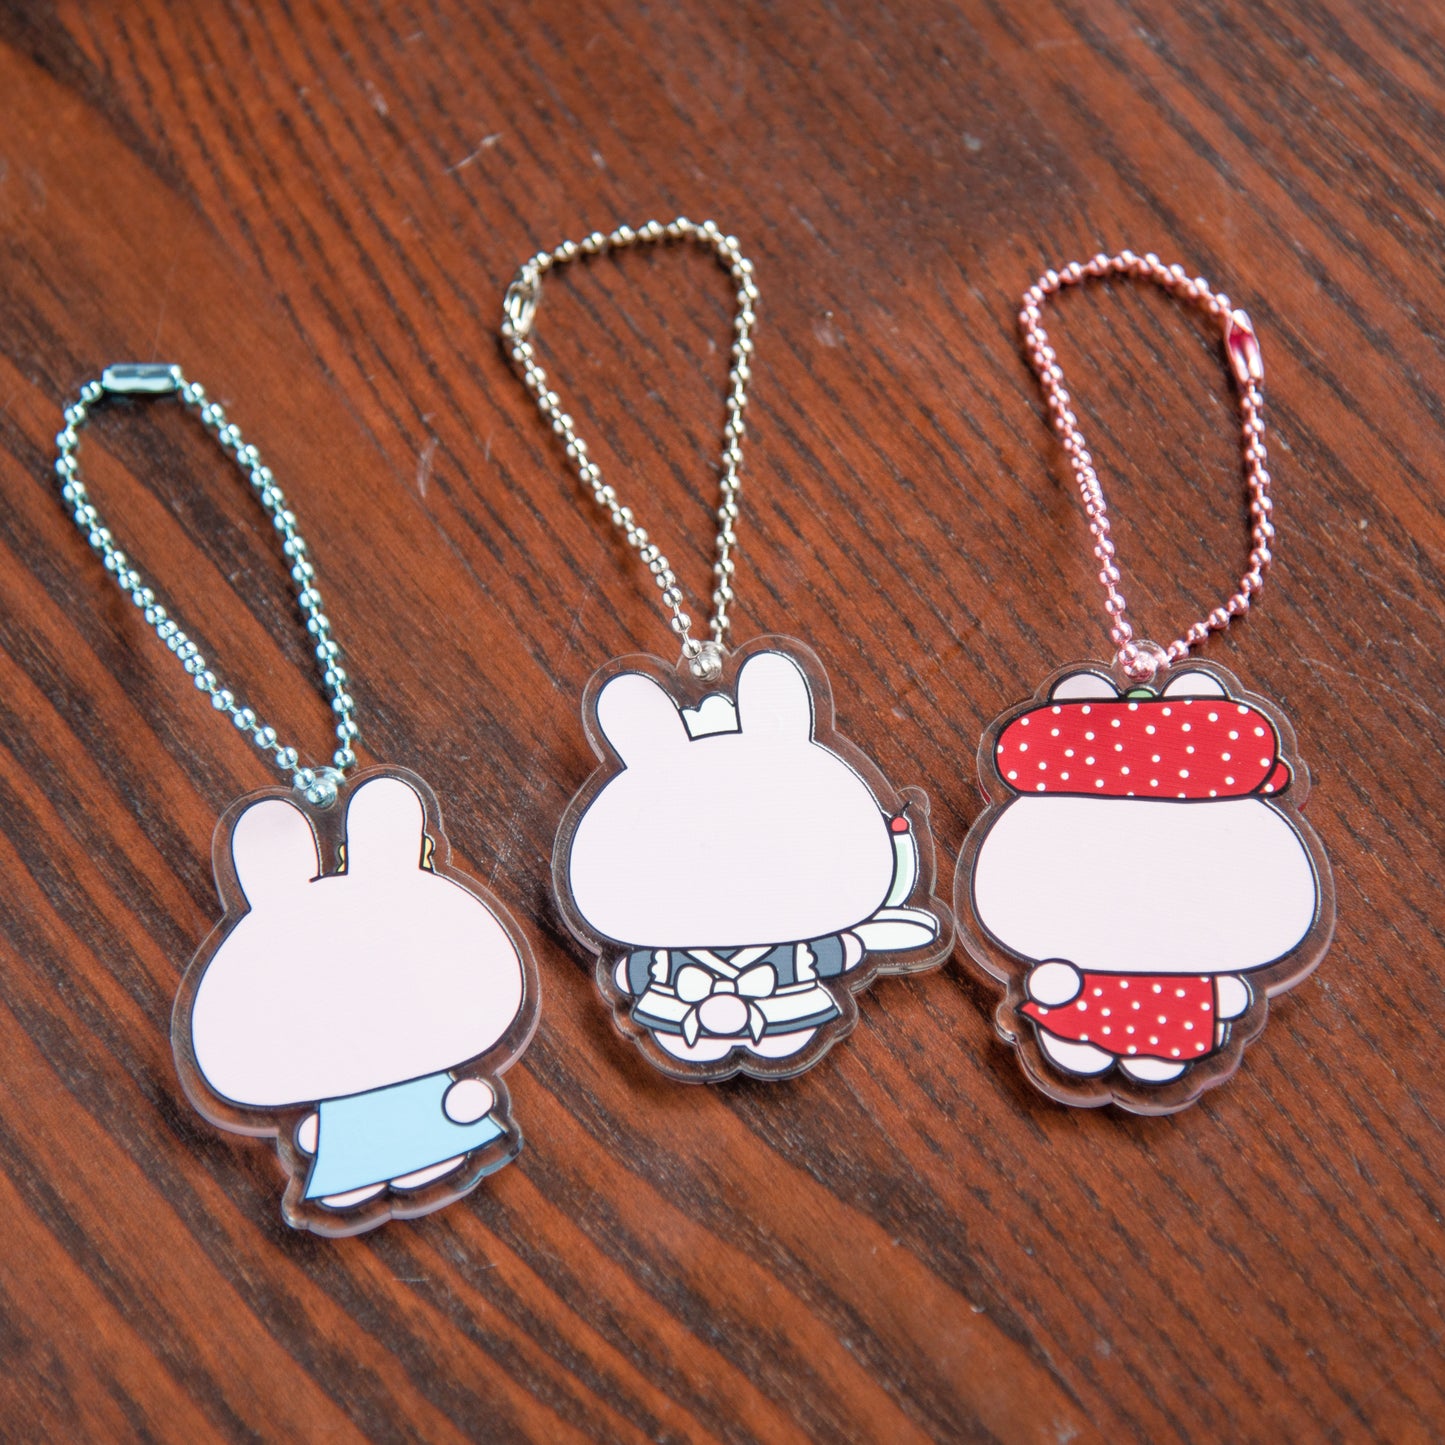 [Asamimi-chan] Acrylic key chain (Strawberry Milk) (Retro) [Shipped in mid-November]